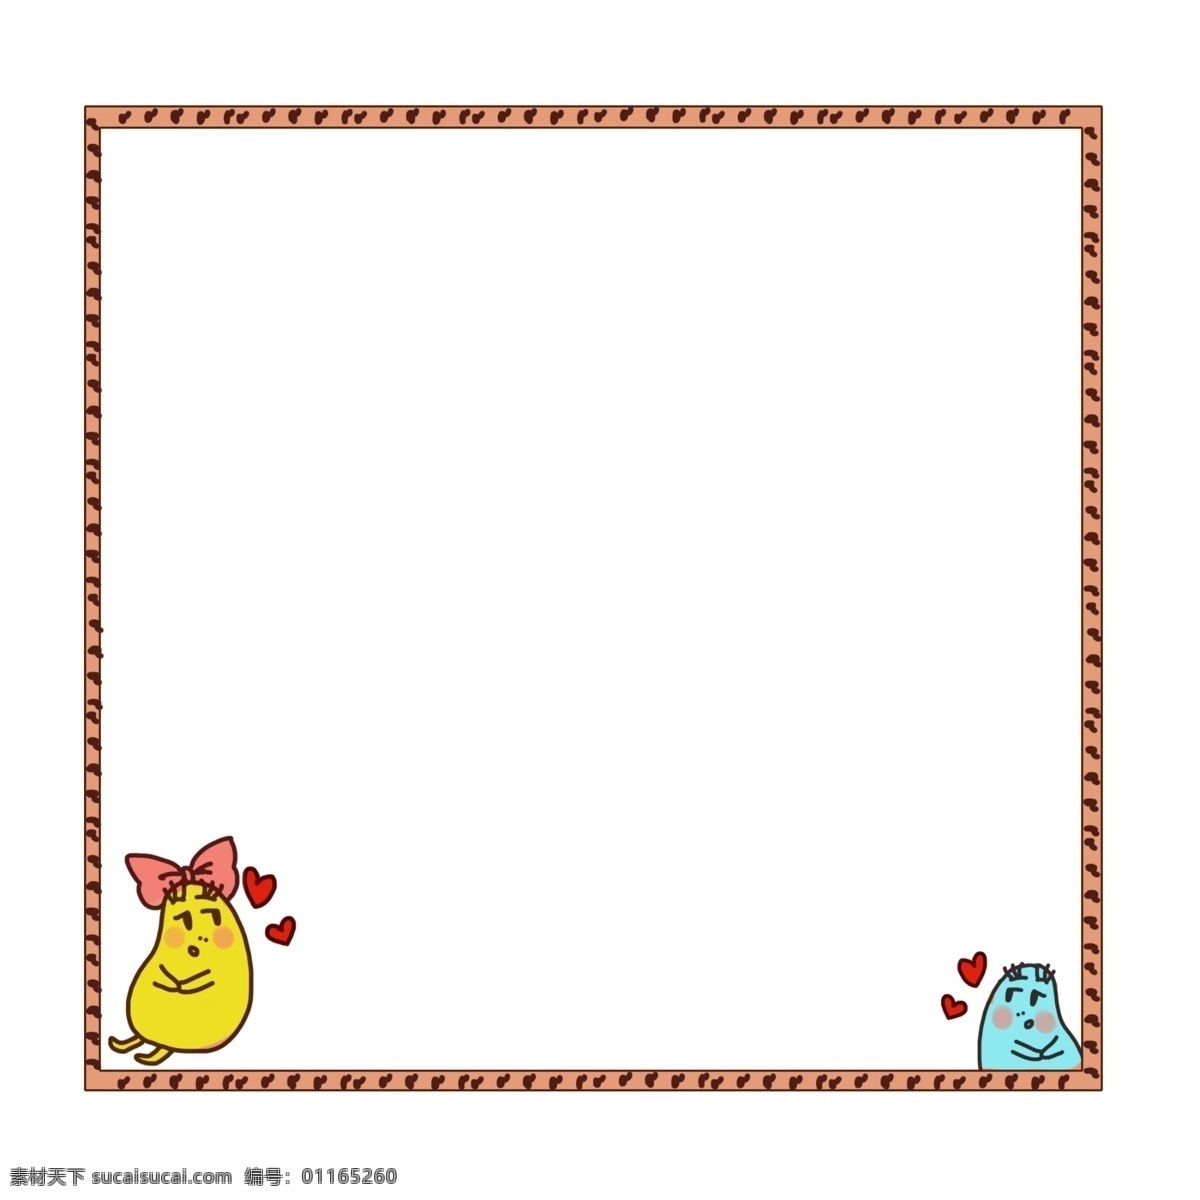 可爱 小鸡 边框 装饰 可爱的边框 黄色小鸡 蓝色小鸡 蝴蝶结装饰 创意边框 正方形边框 棕色边框